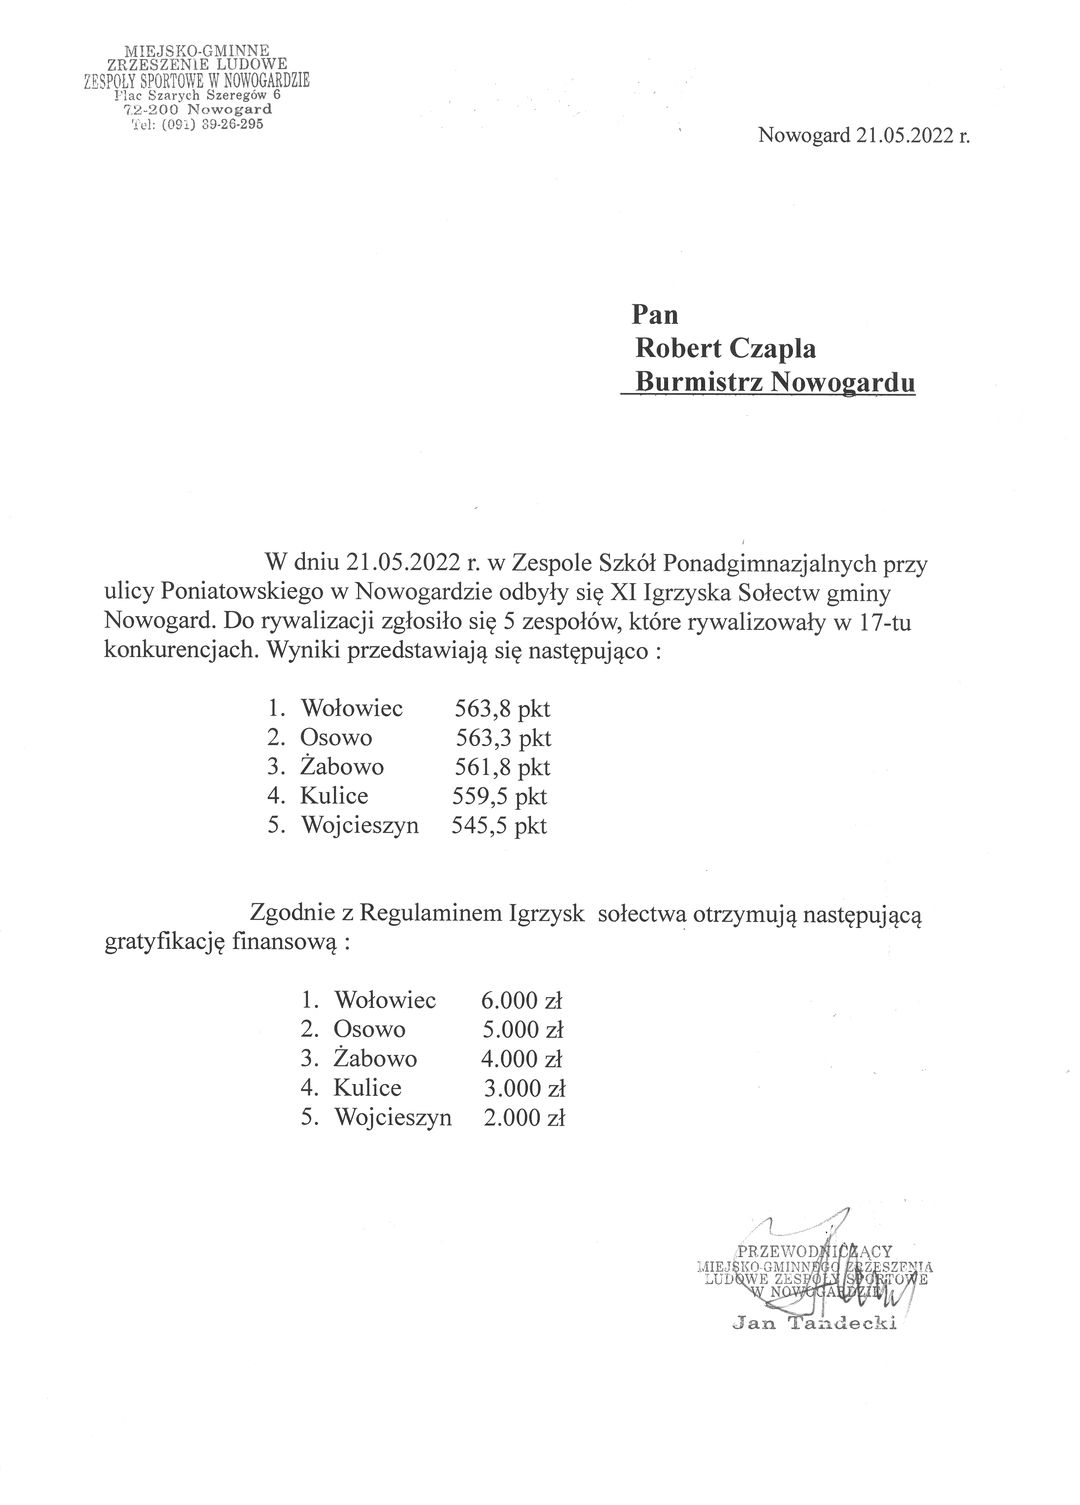 Wyniki XI igrzysk Spłectw gminy Nowogard